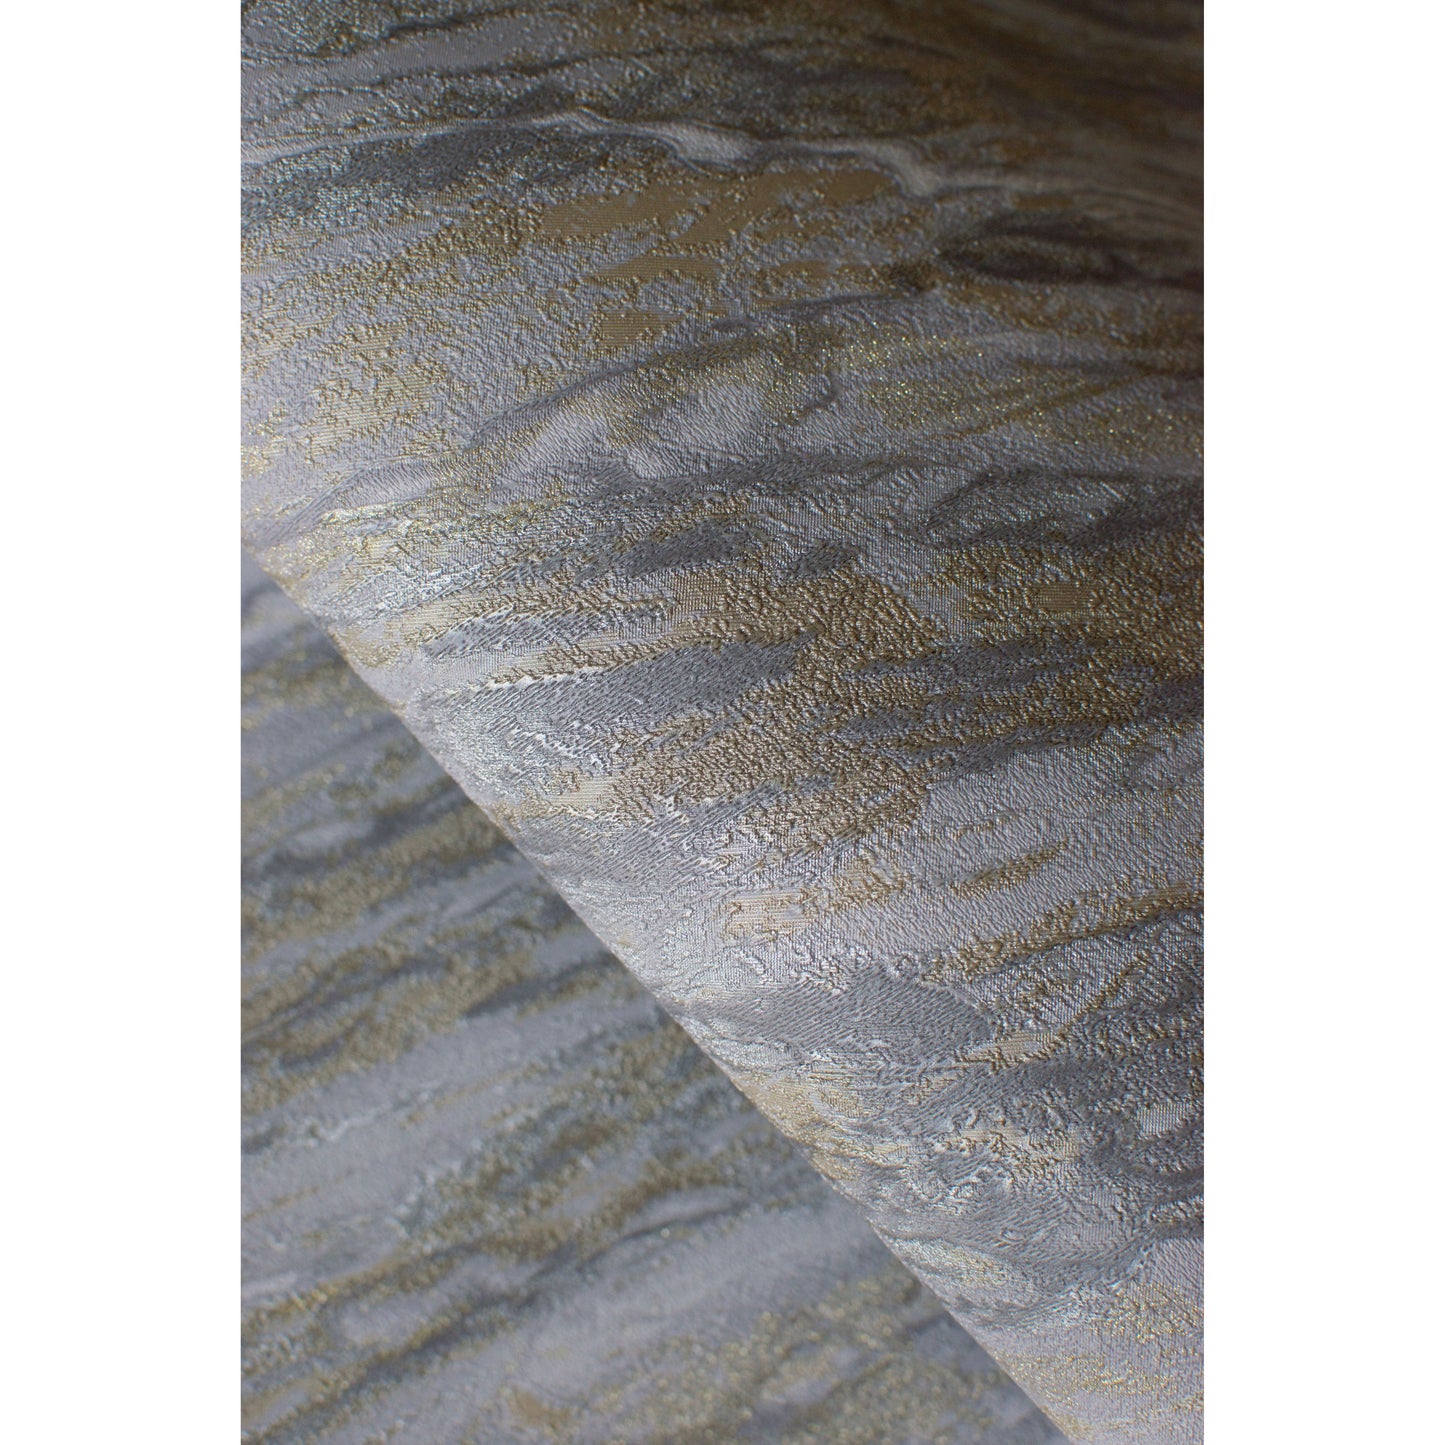 Muriva Venezia Papier peint marbre gris foncé (M66319)